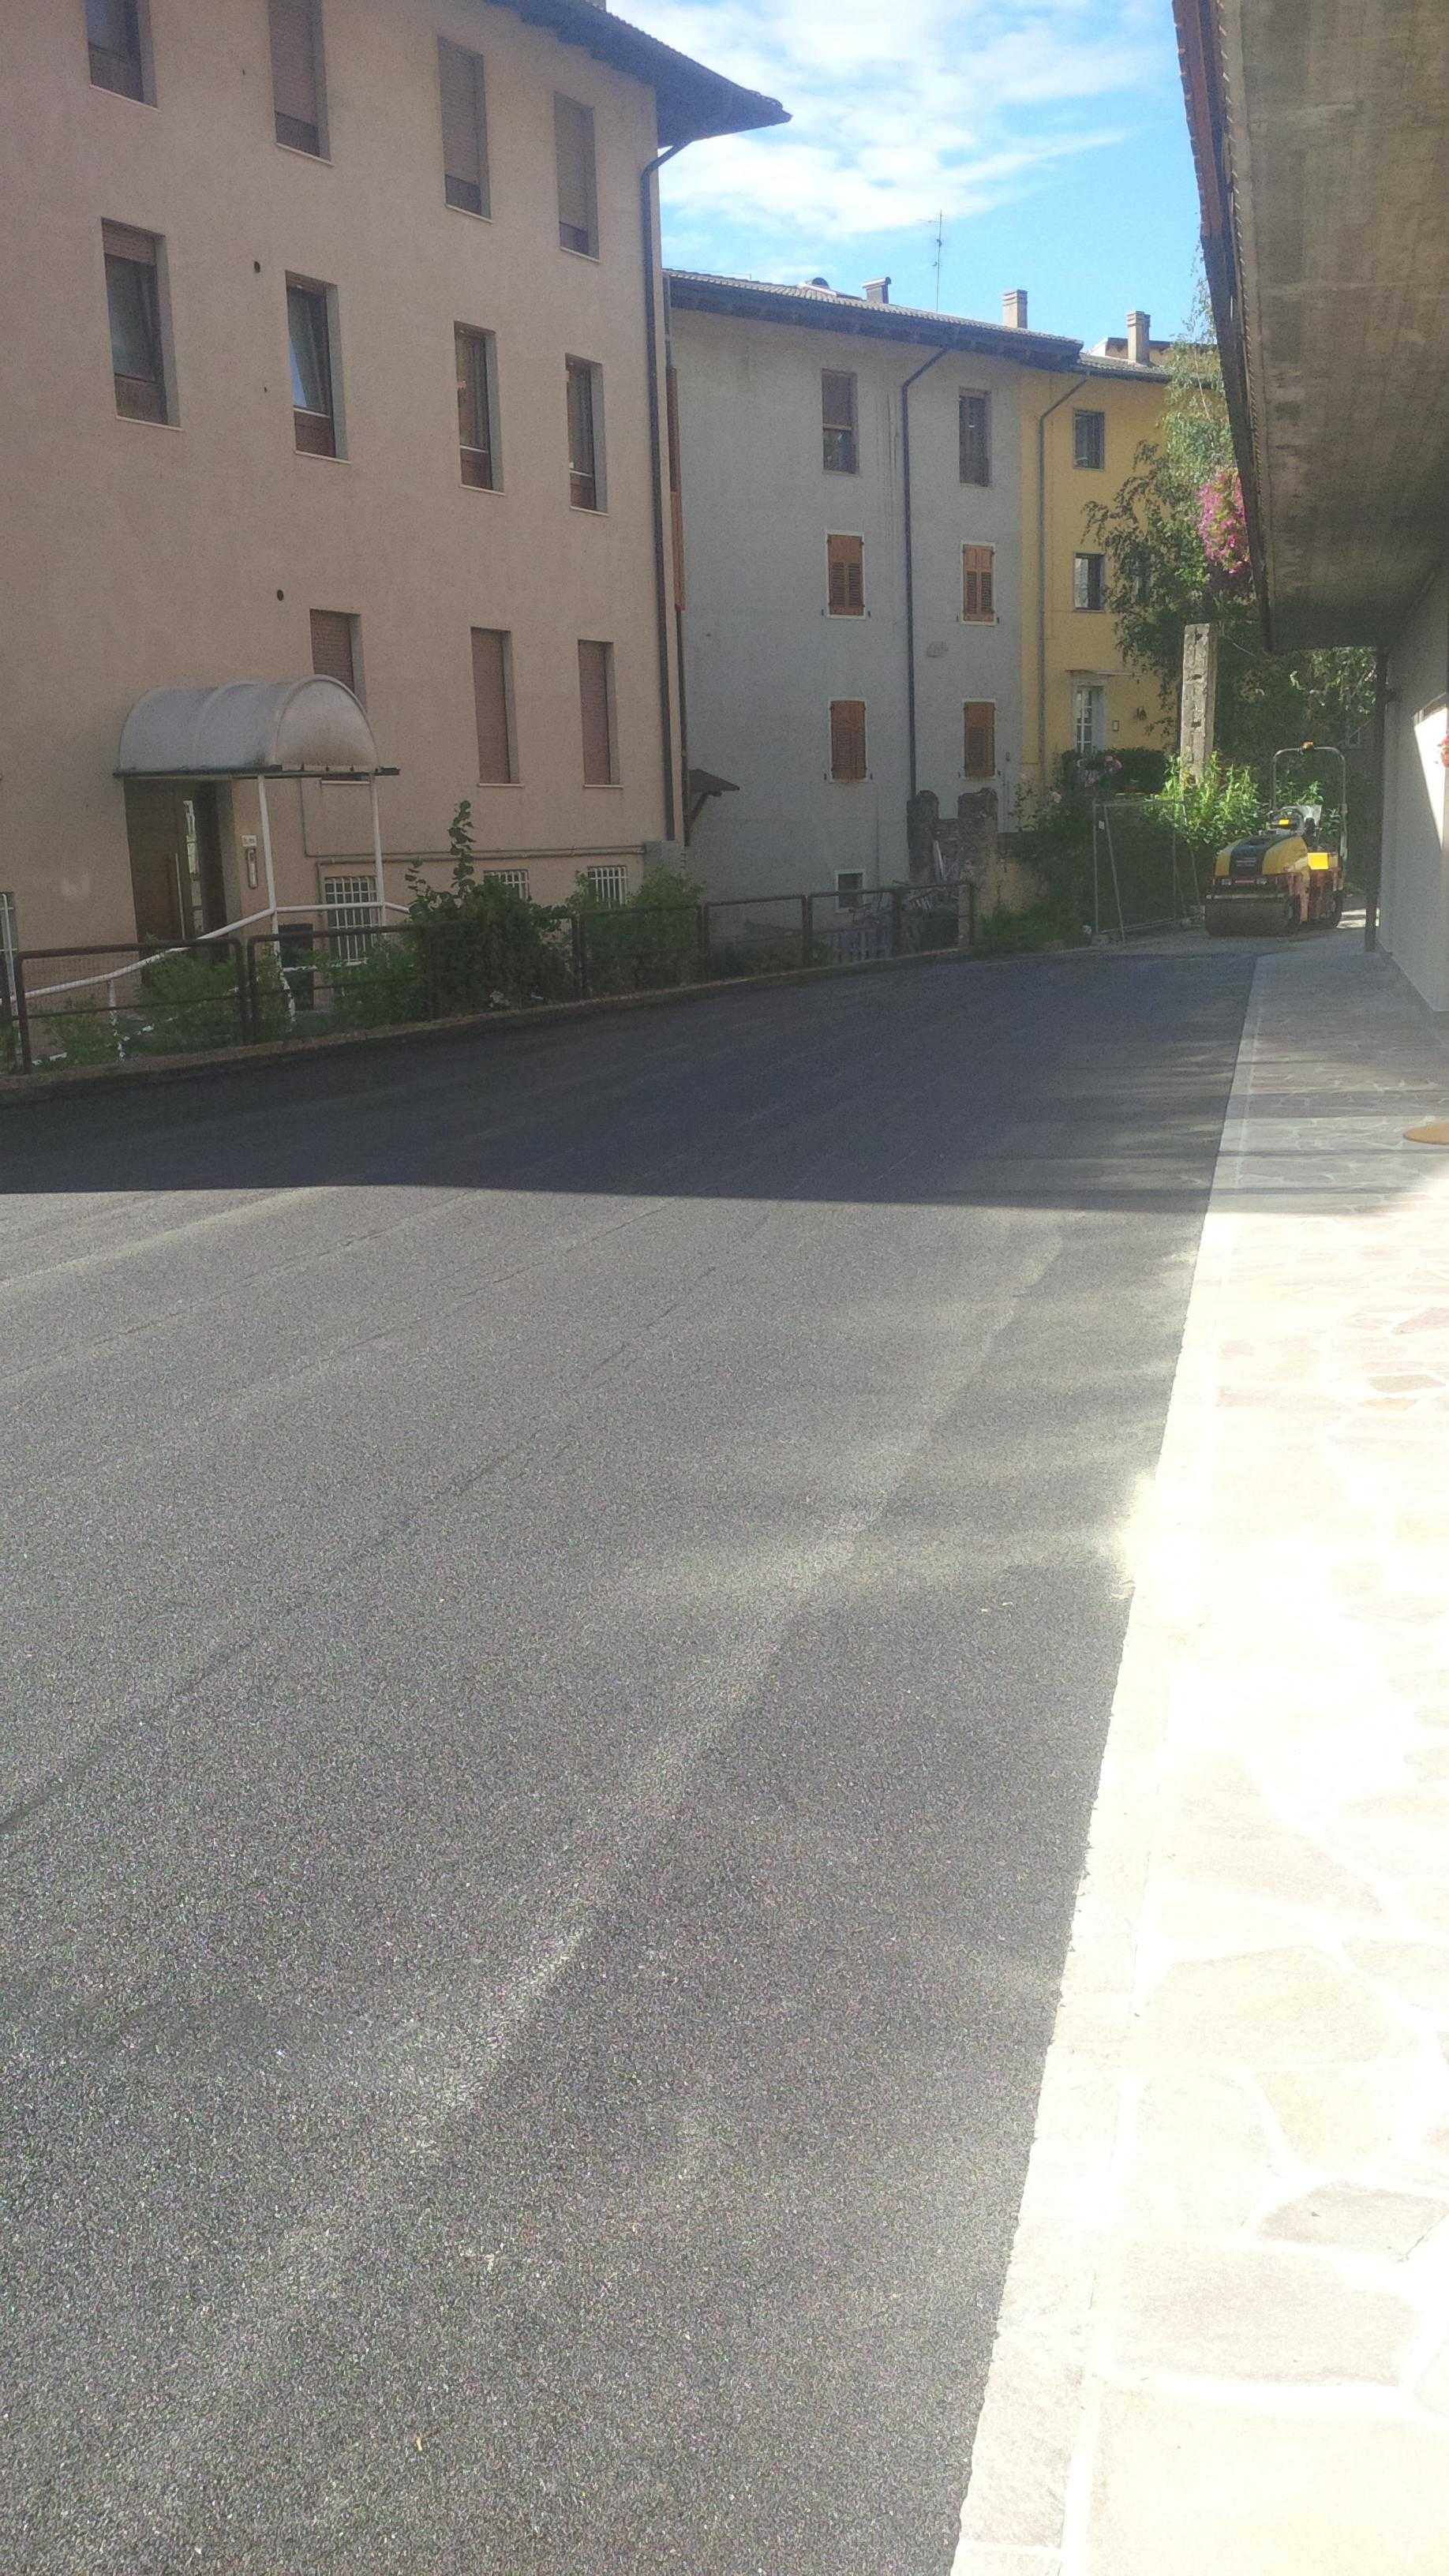 Impermeabilizzazione parcheggio e pavimento in asfalto/porfido